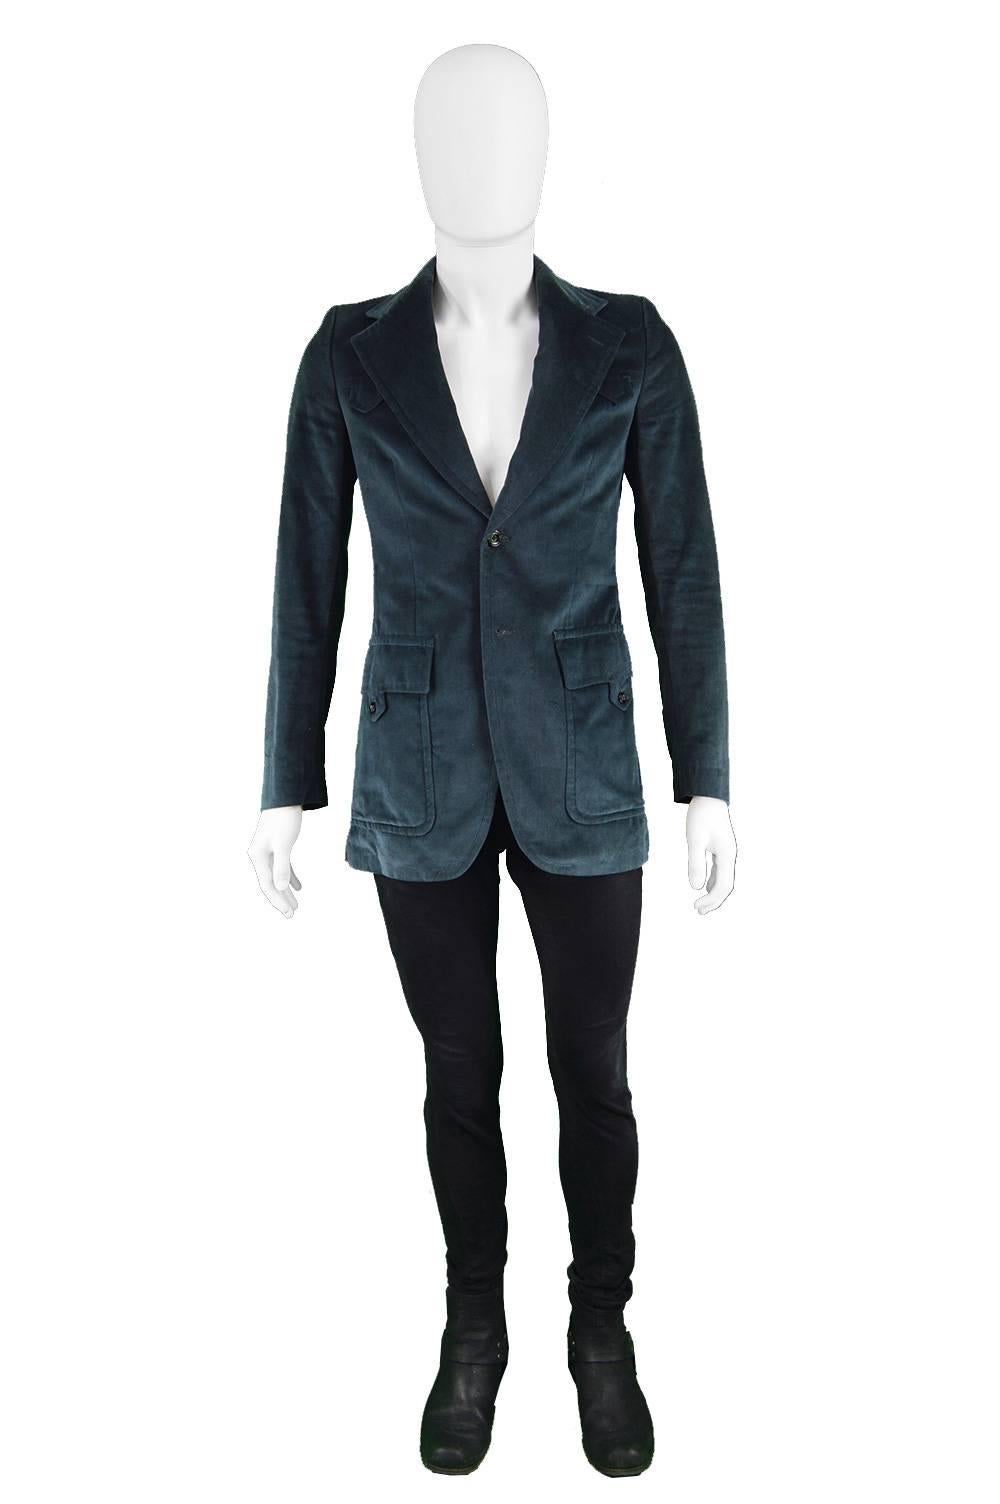 Ted Lapidus Men's Vintage Dark Teal Velvet Wide Lapels Blazer Jacket, 1970s

Estimated Size: Men's XS / women's Medium. Please check measurements
Chest - 36” / 91cm
Waist - 32” / 81cm
Length (Shoulder to Hem) - 30” / 76cm
Shoulder to Shoulder - 15”